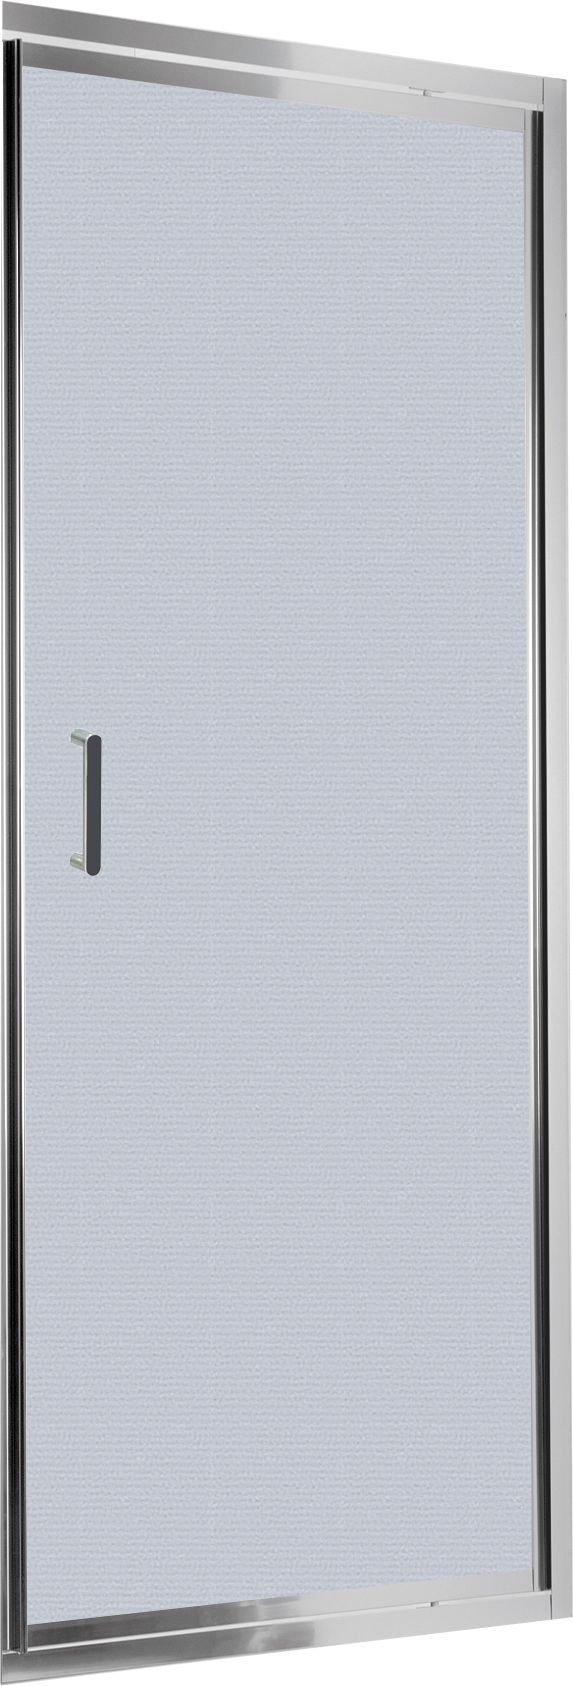 Drzwi prysznicowe wnękowe 80 cm - uchylne - KTL_612D - Główne zdjęcie produktowe